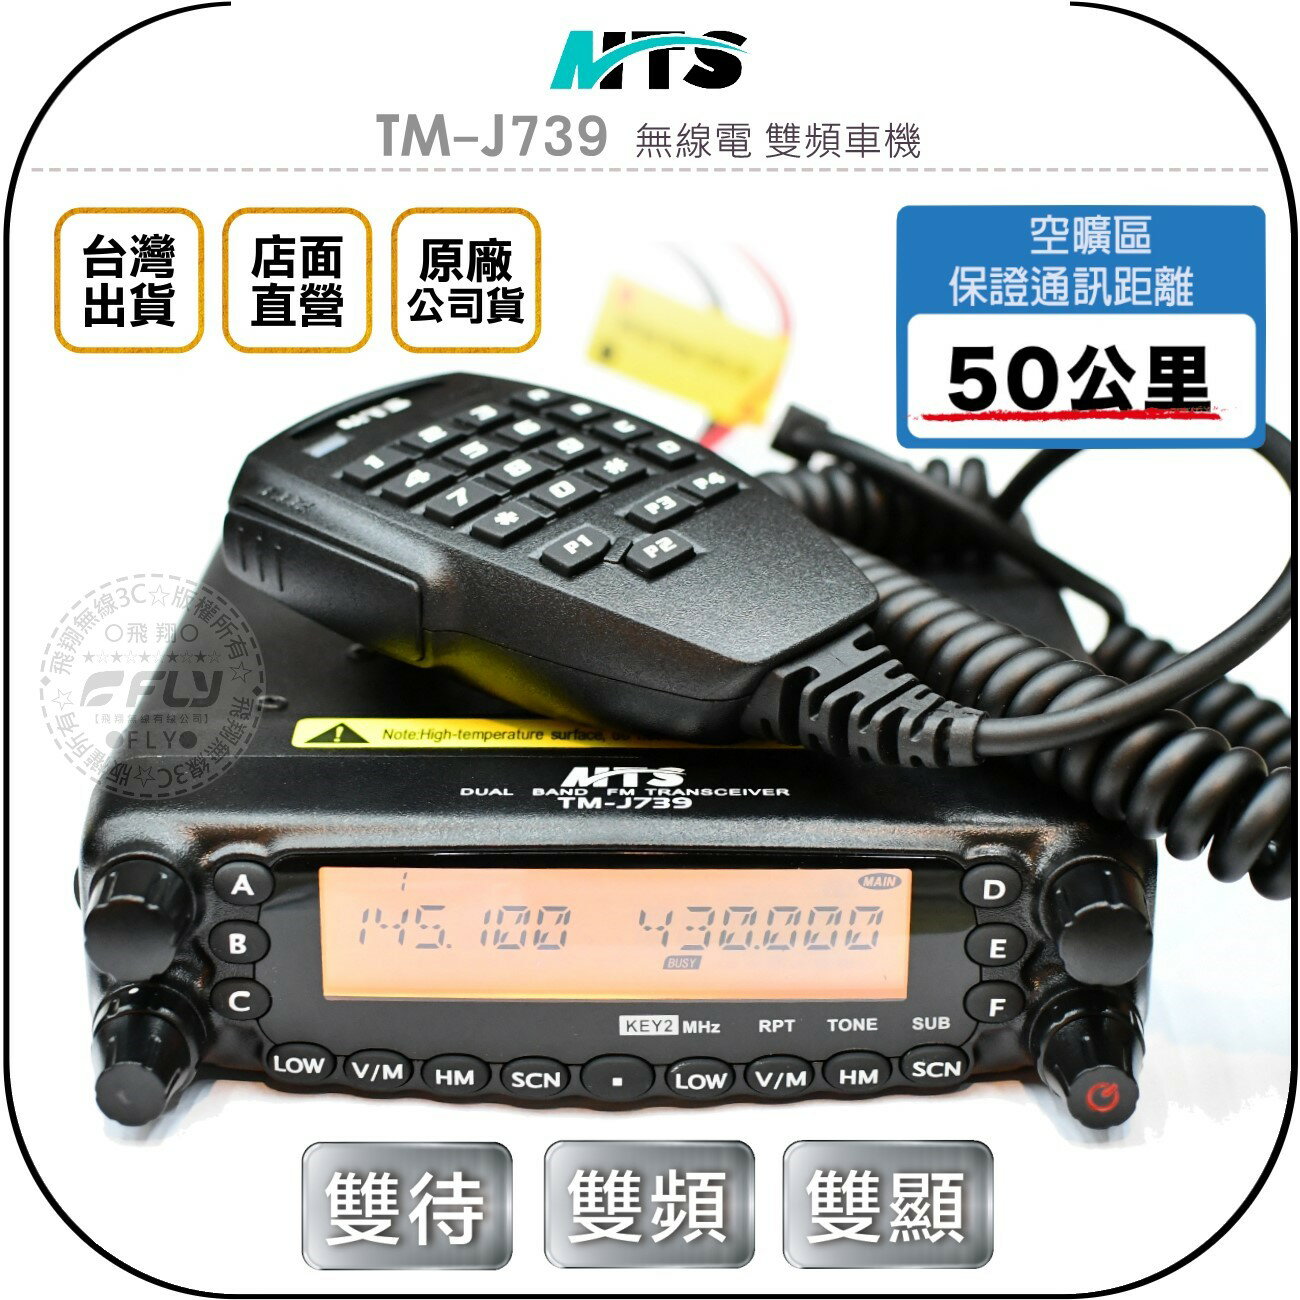 《飛翔無線3C》MTS TM-J739 無線電 雙頻車機◉公司貨◉雙顯雙收◉面板分離◉50公里通話◉數字麥克風◉跟車連繫